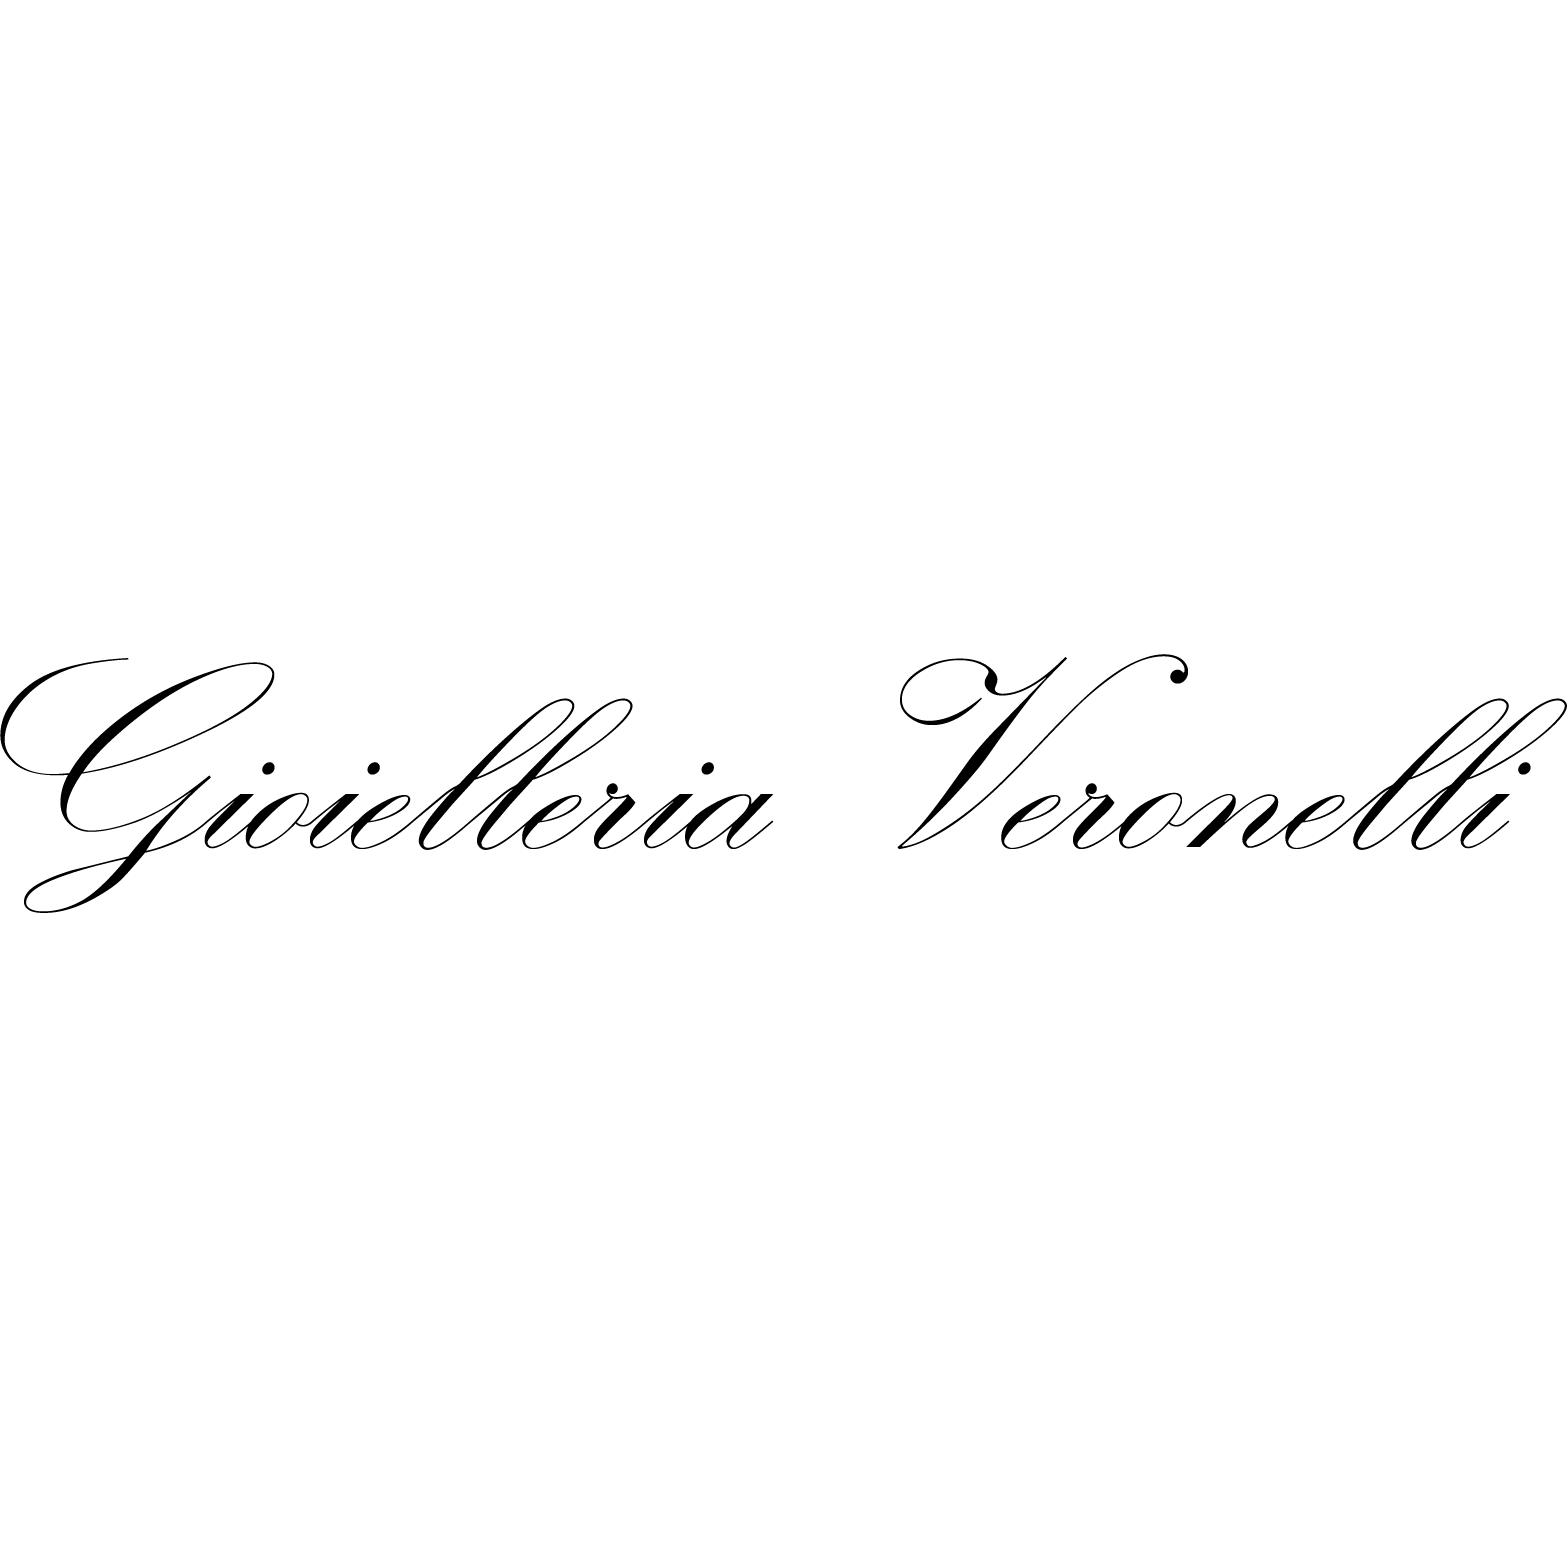 Gioielleria Veronelli - Rivenditore autorizzato Rolex - Rivenditore Autorizzato Cartier